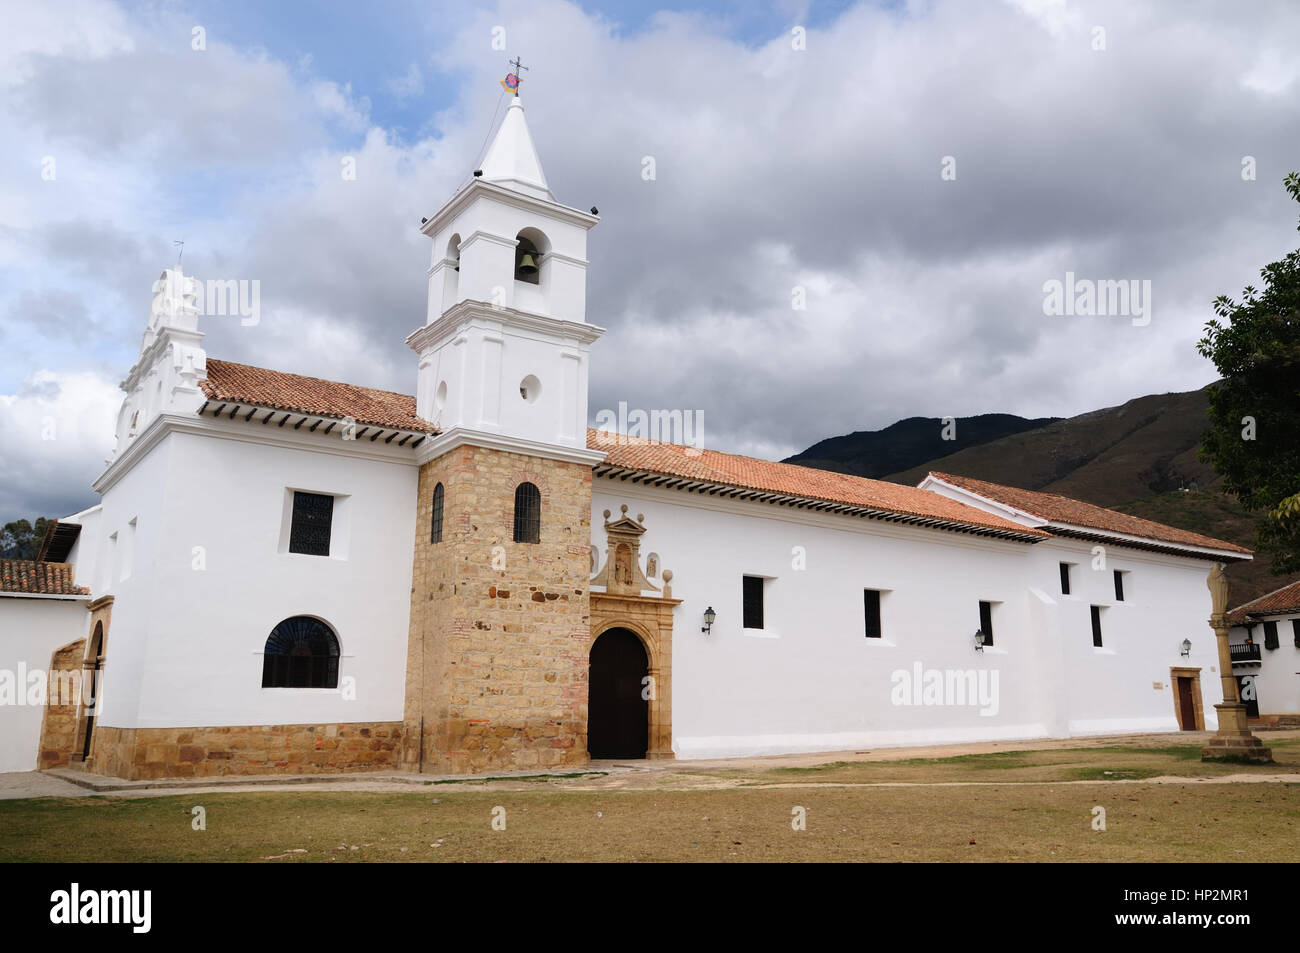 La Colombie, belle villa blanche avec bardeaux de toiture caché derrière les murs à l'époque coloniale Villa de Leyva. Iglesia del Carmen Banque D'Images